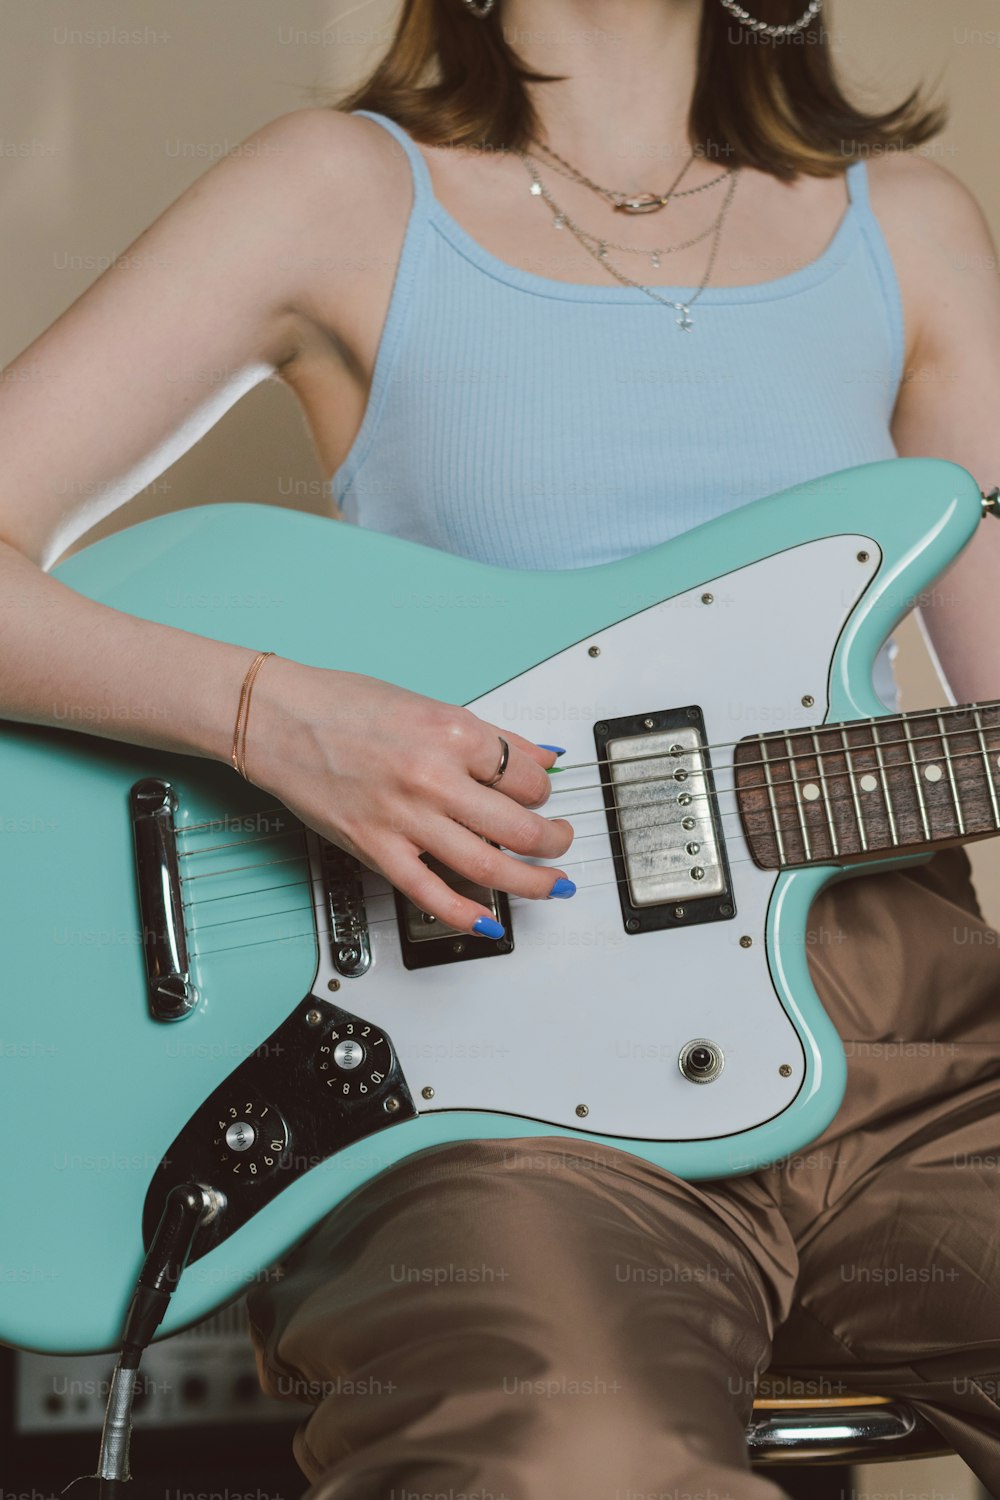 Une femme assise sur une chaise tenant une guitare bleue